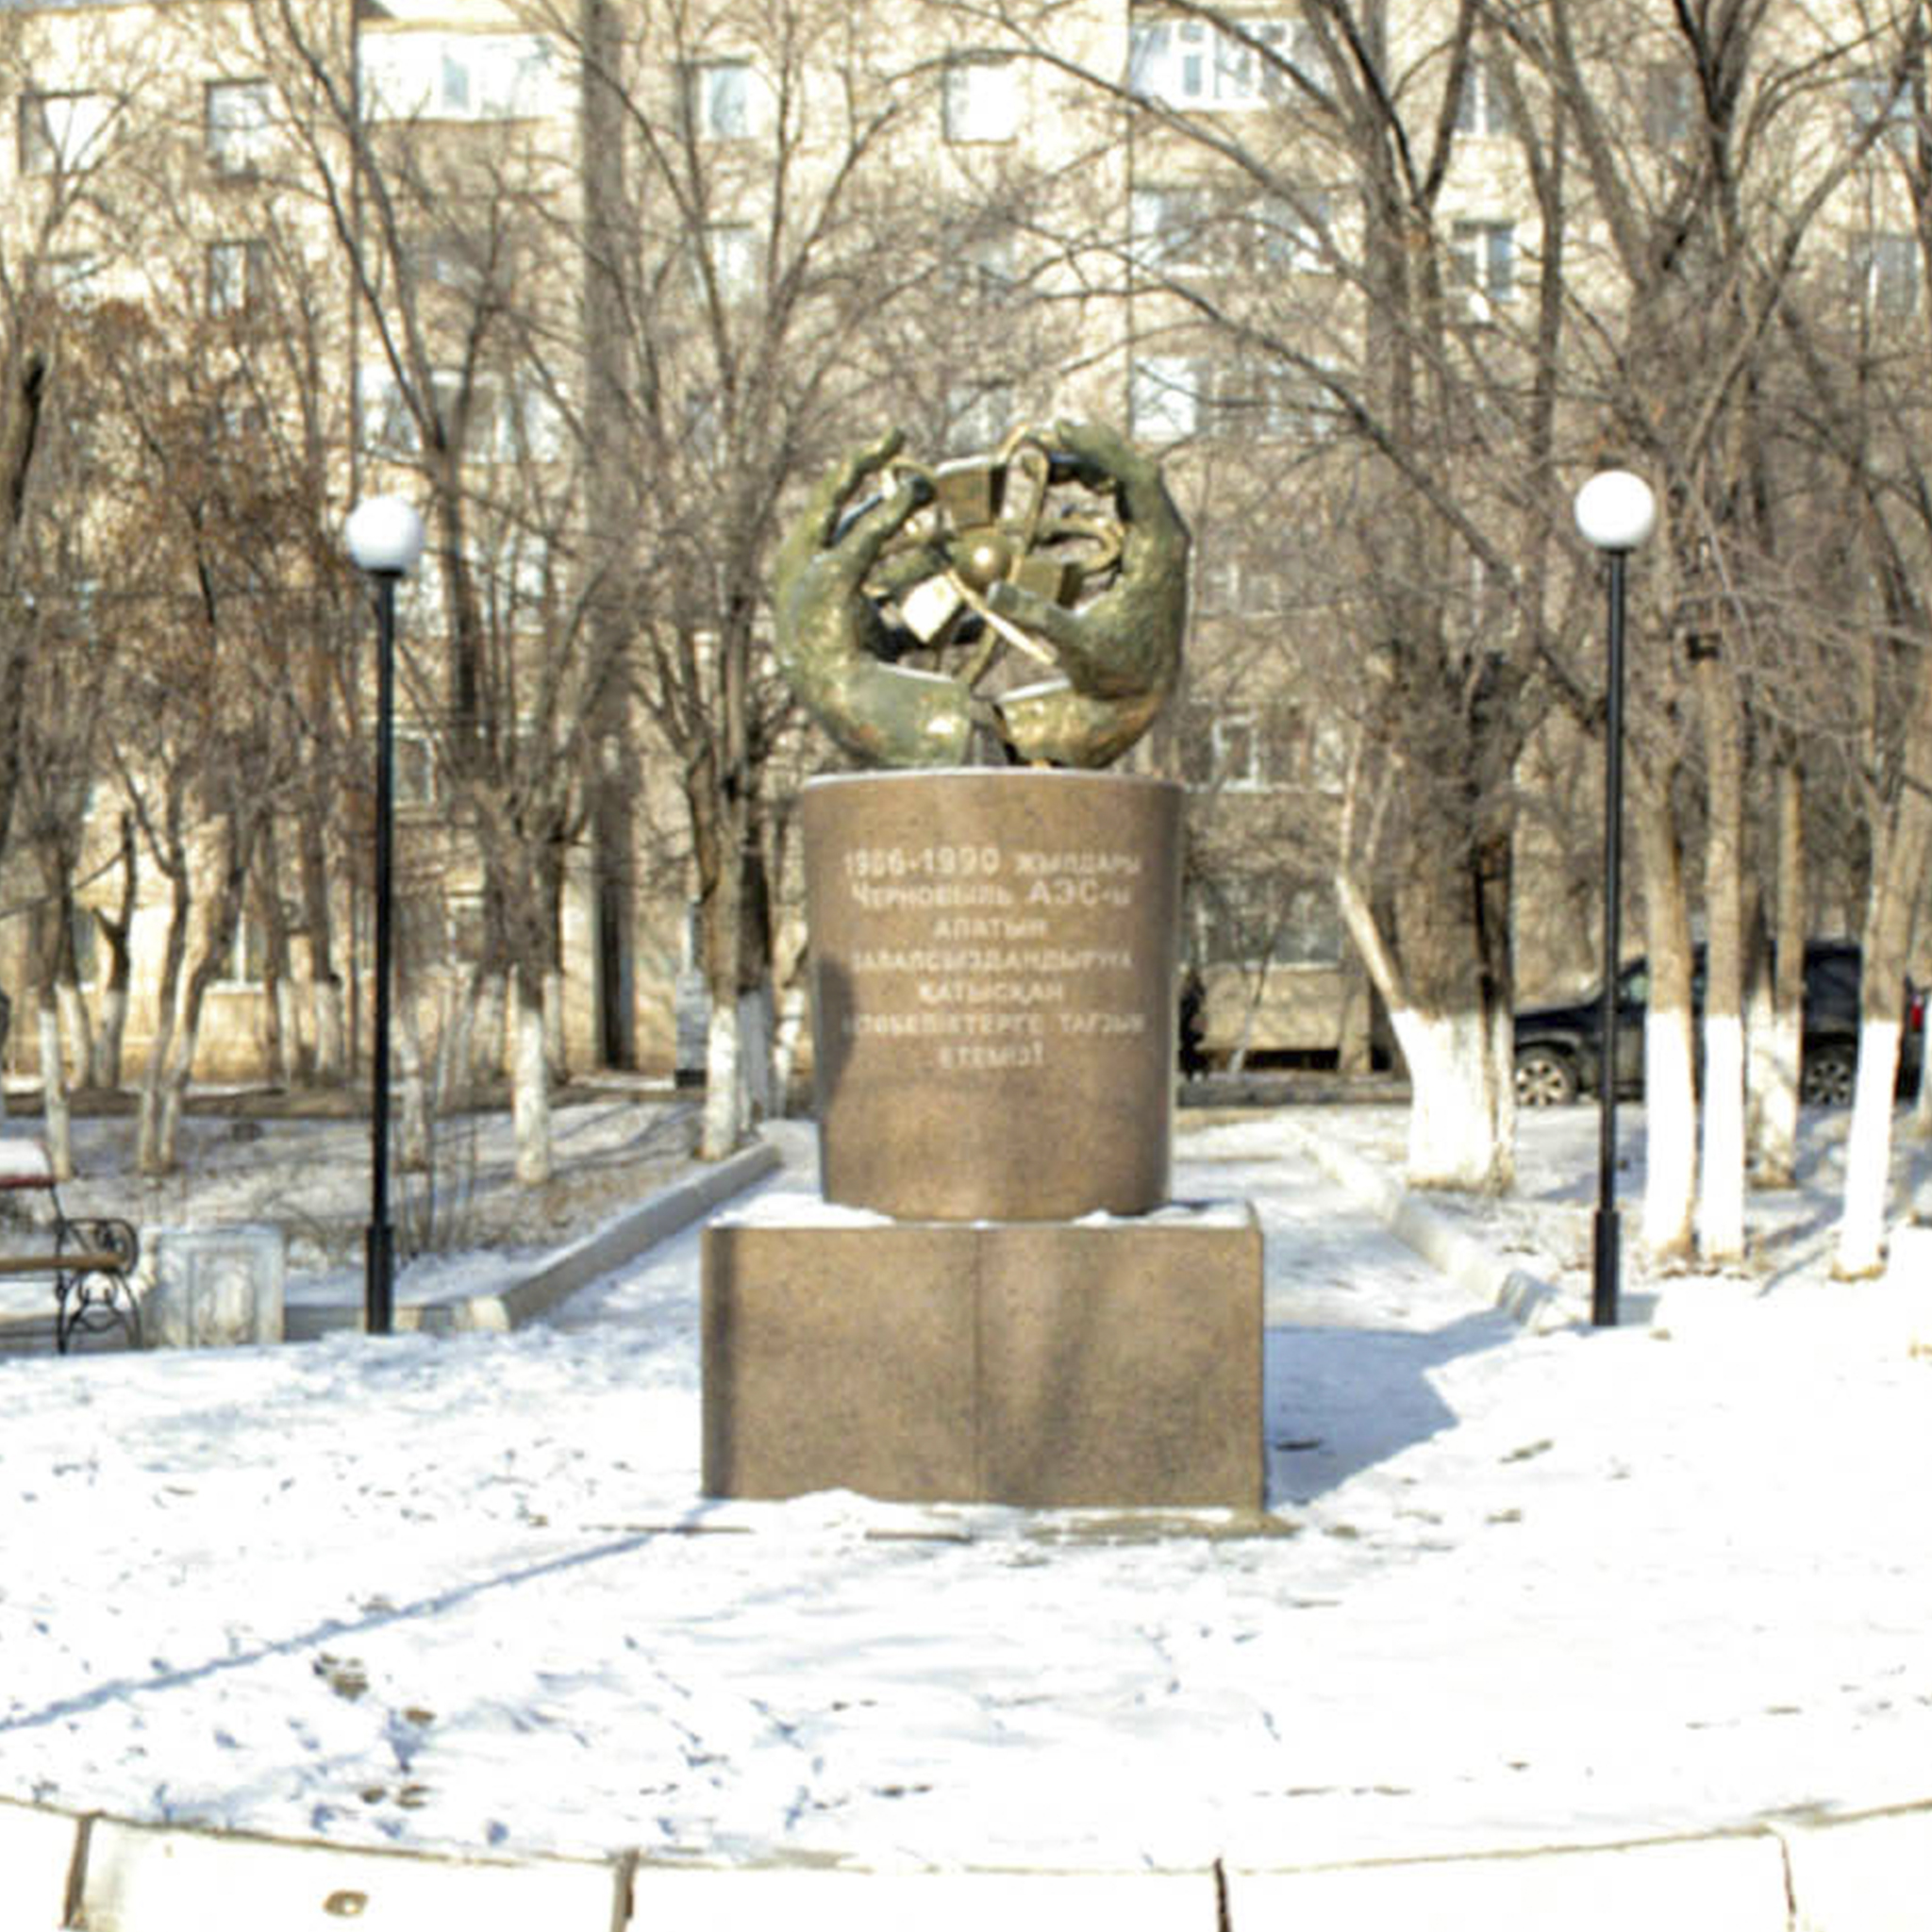 Памятник-обелиск актюбинцам, участвовавшим в ликвидации аварии Чернобыльской АЭС в 1986-1990 гг.